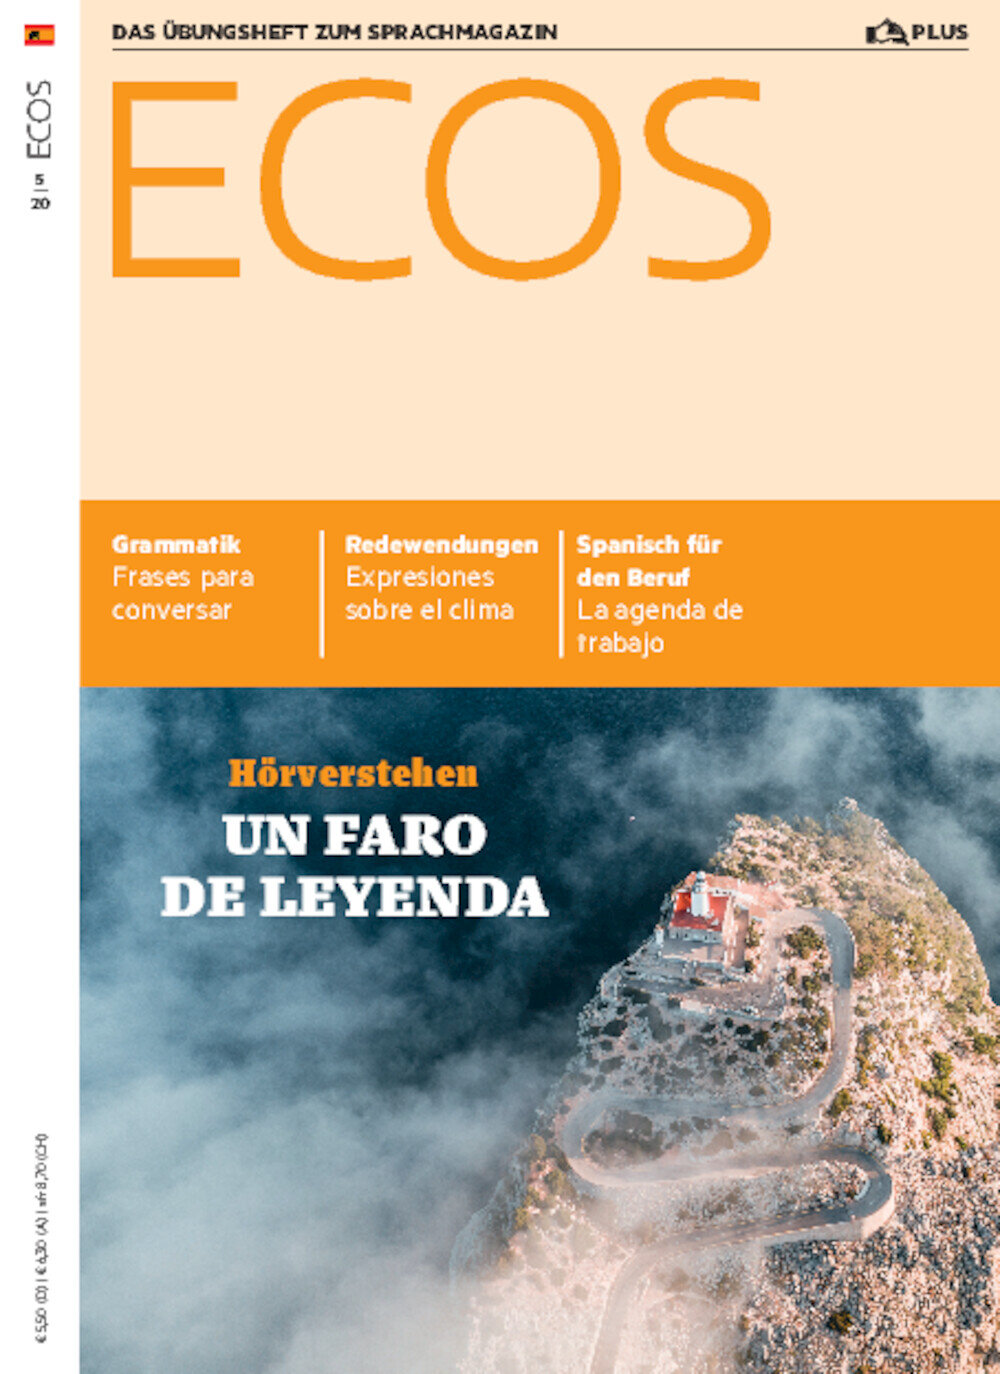 ECOS Übungsheft Digital 05/2020